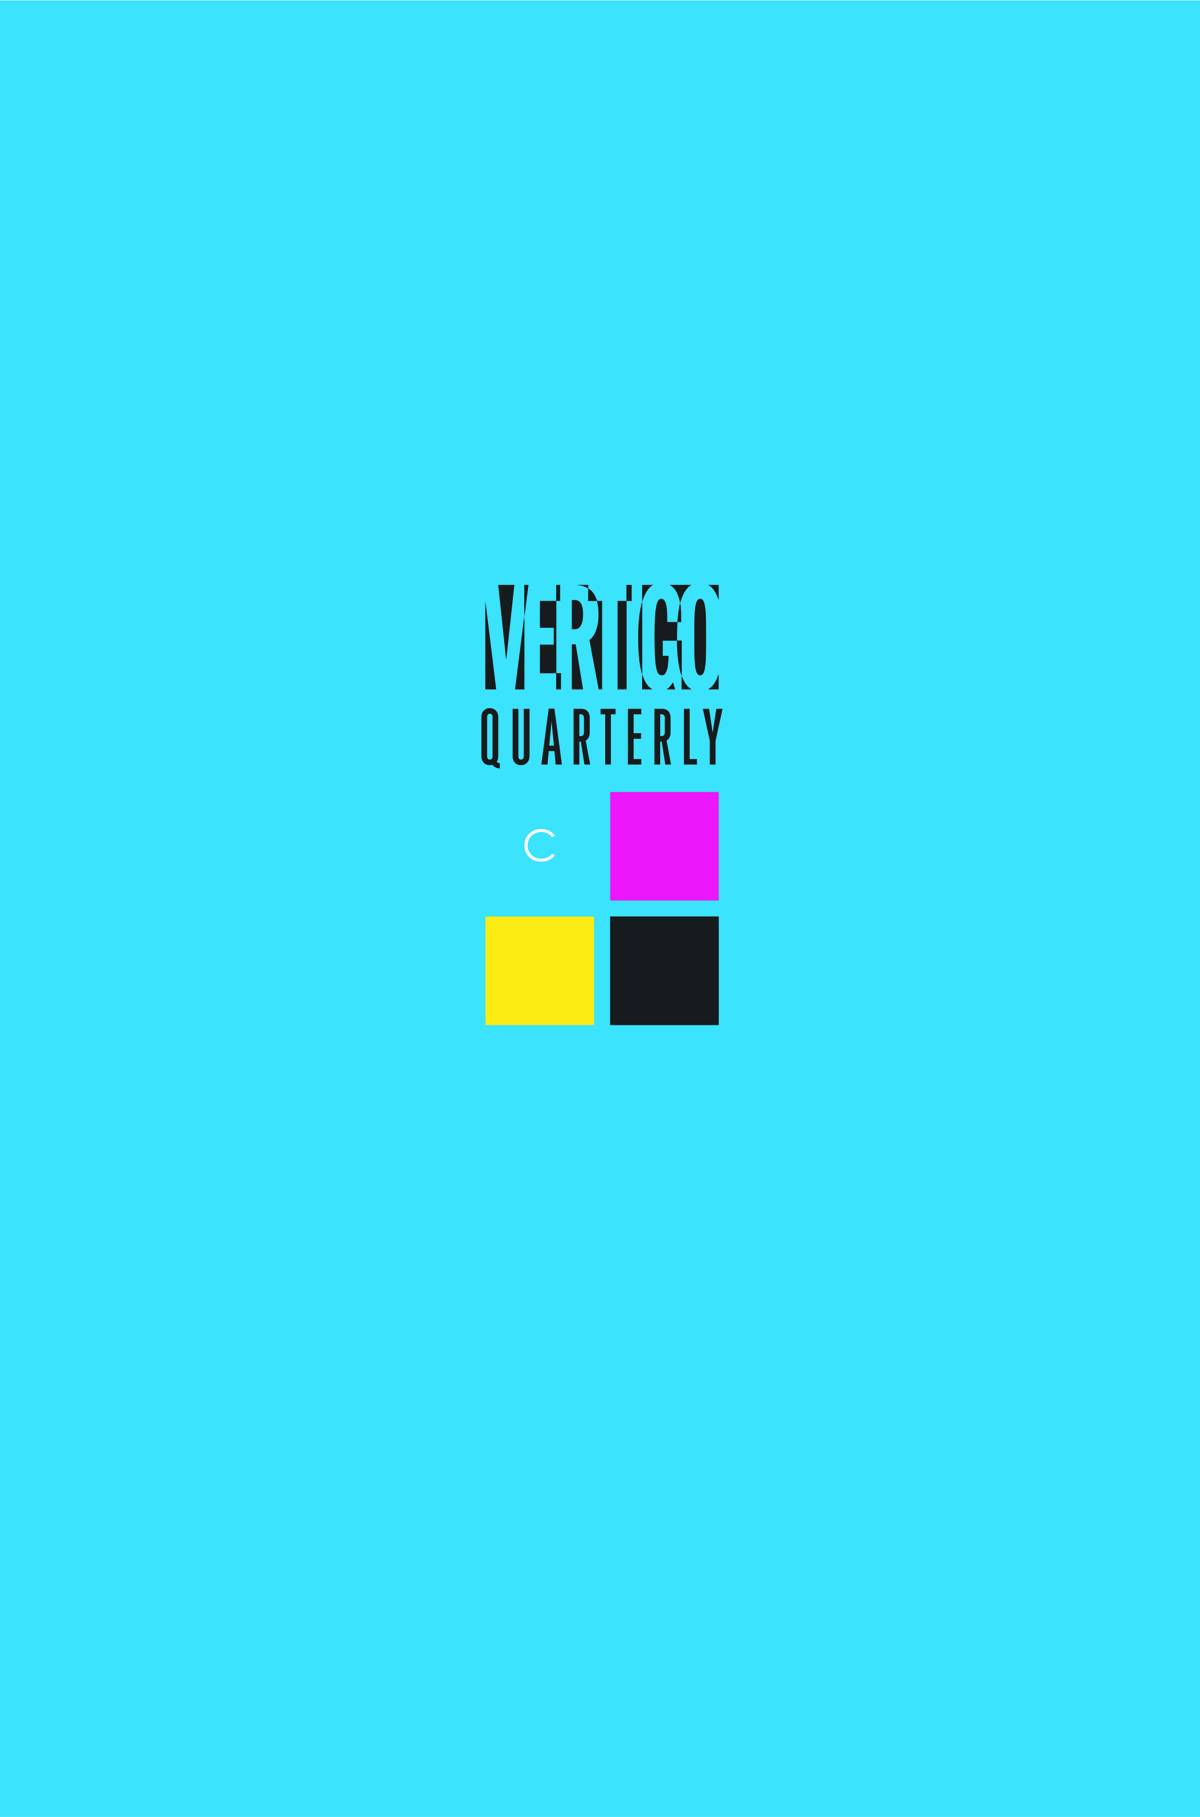 Vwetigo_Quarterly_Cyan